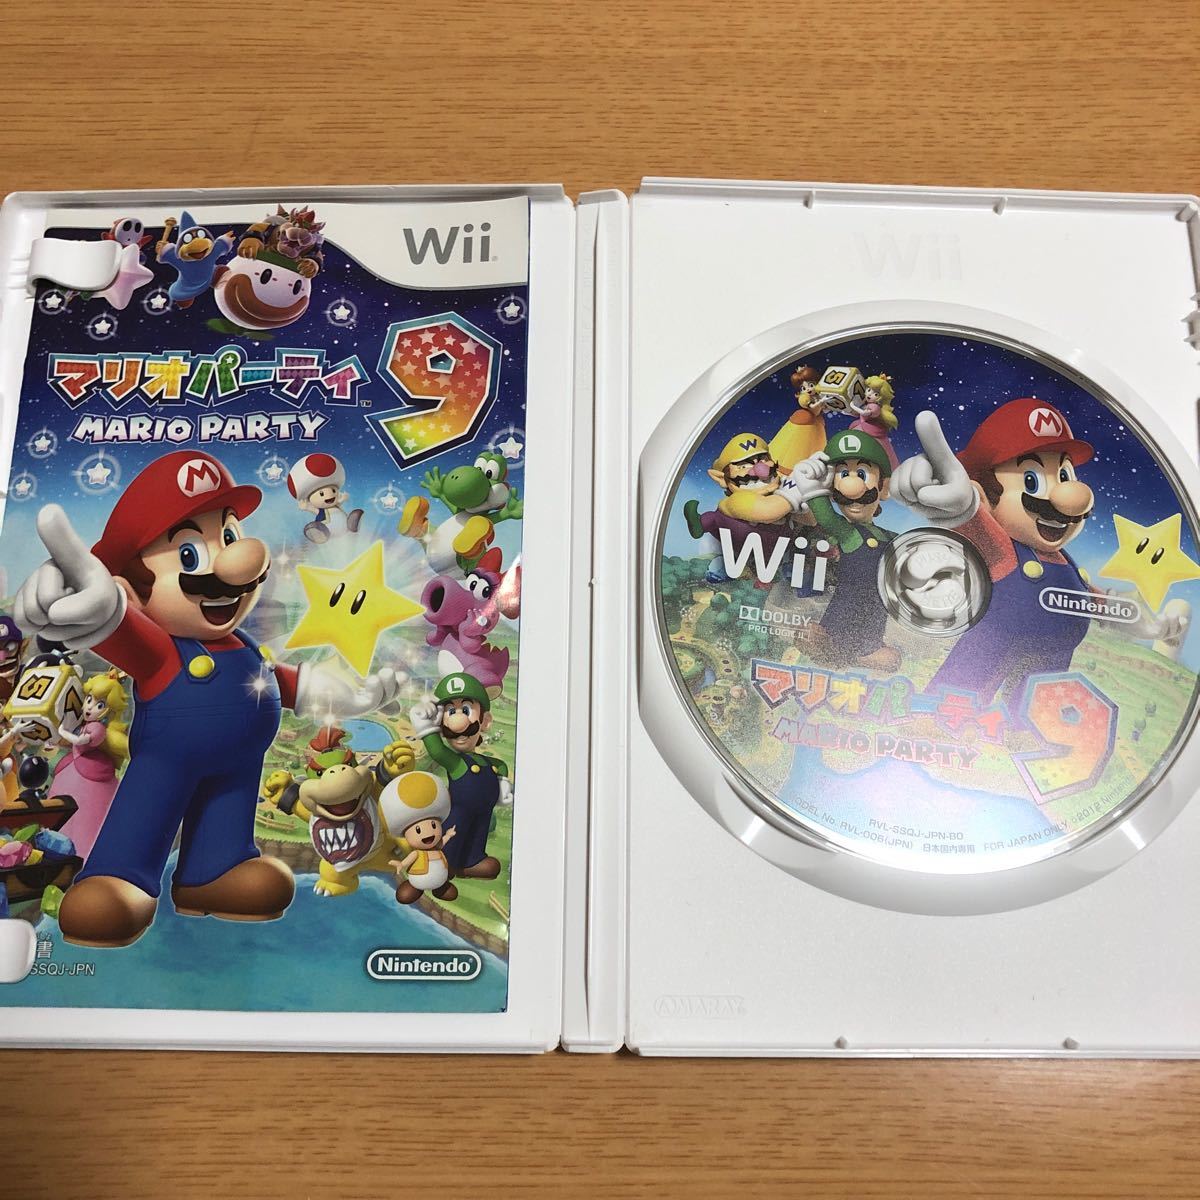 マリオパーティ9 Wii